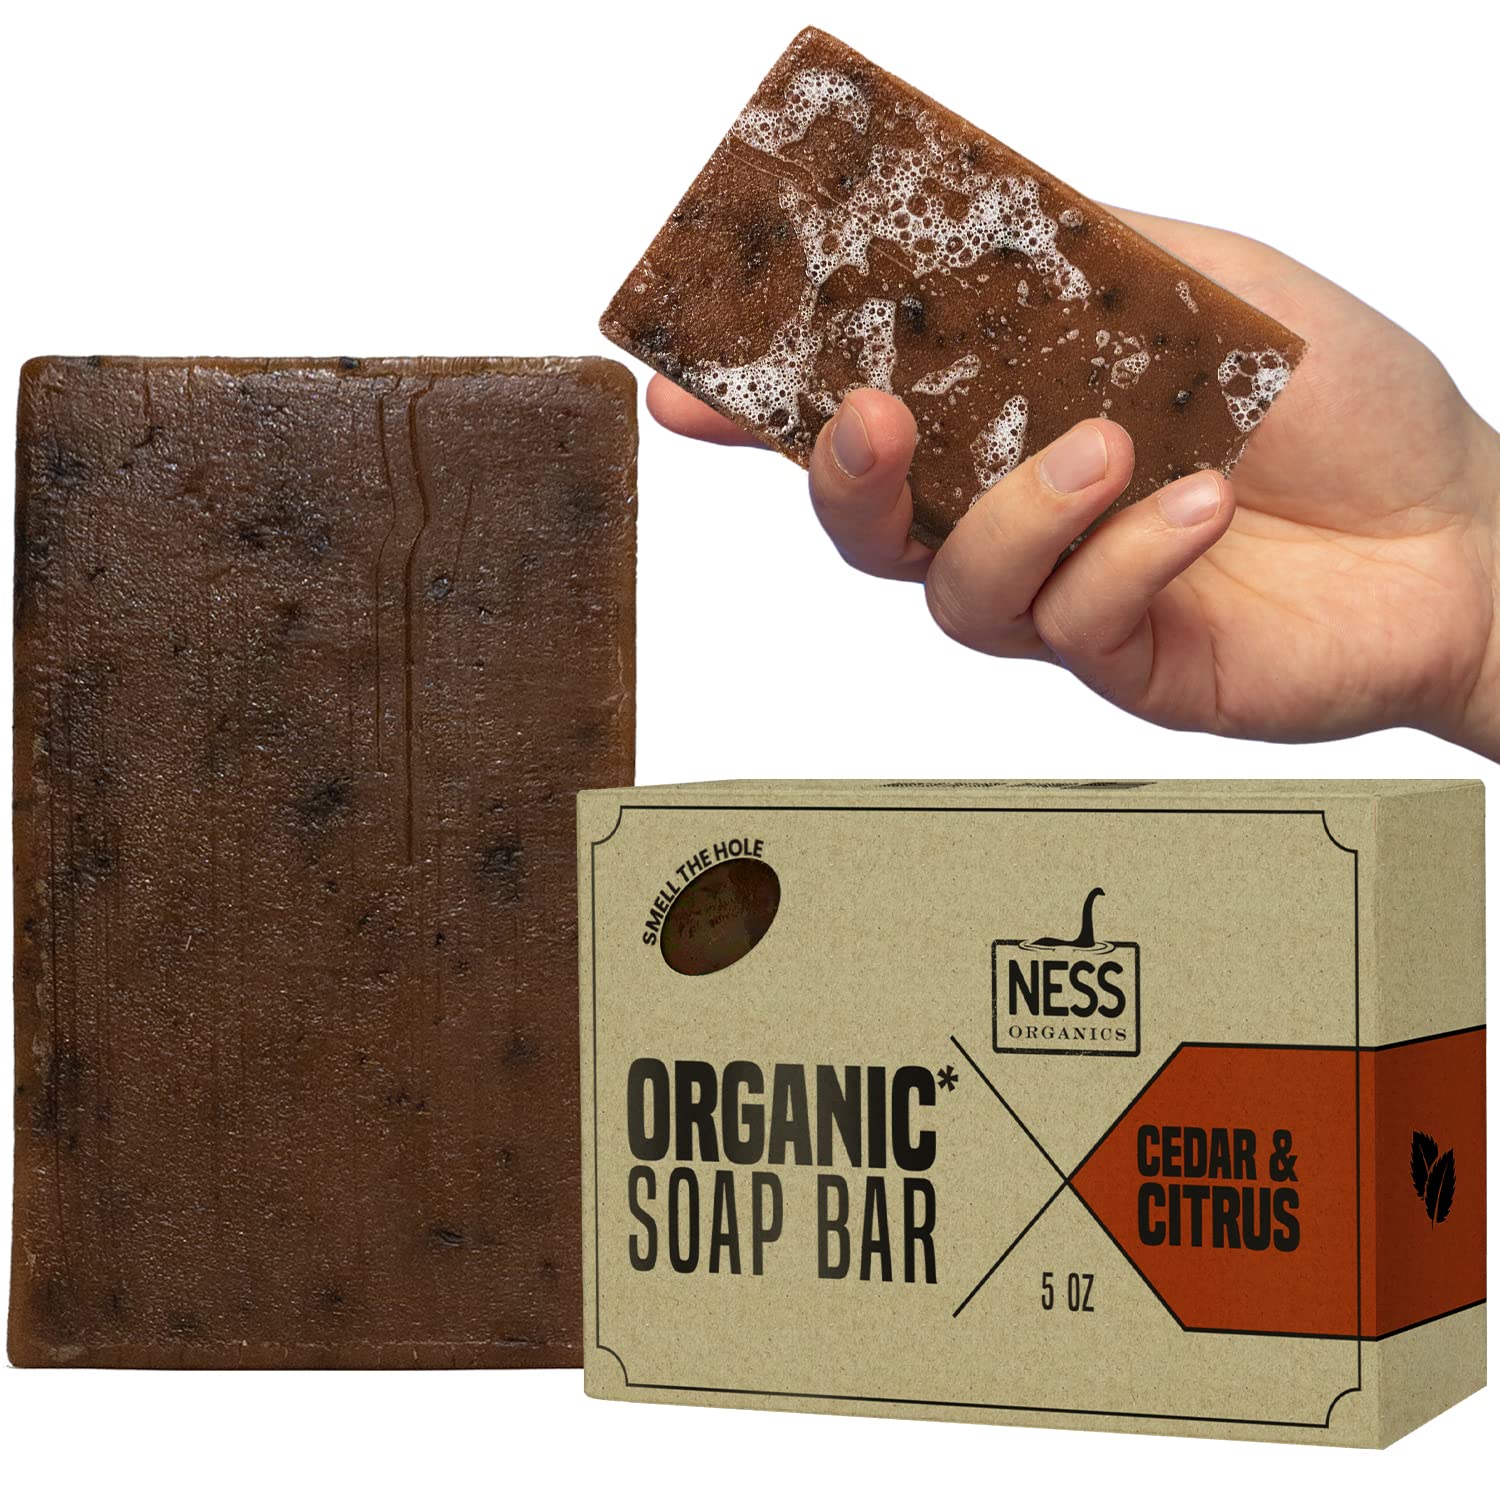 Cedar Citrus Bar Soap, Men's Soap, Natural Soap for Men